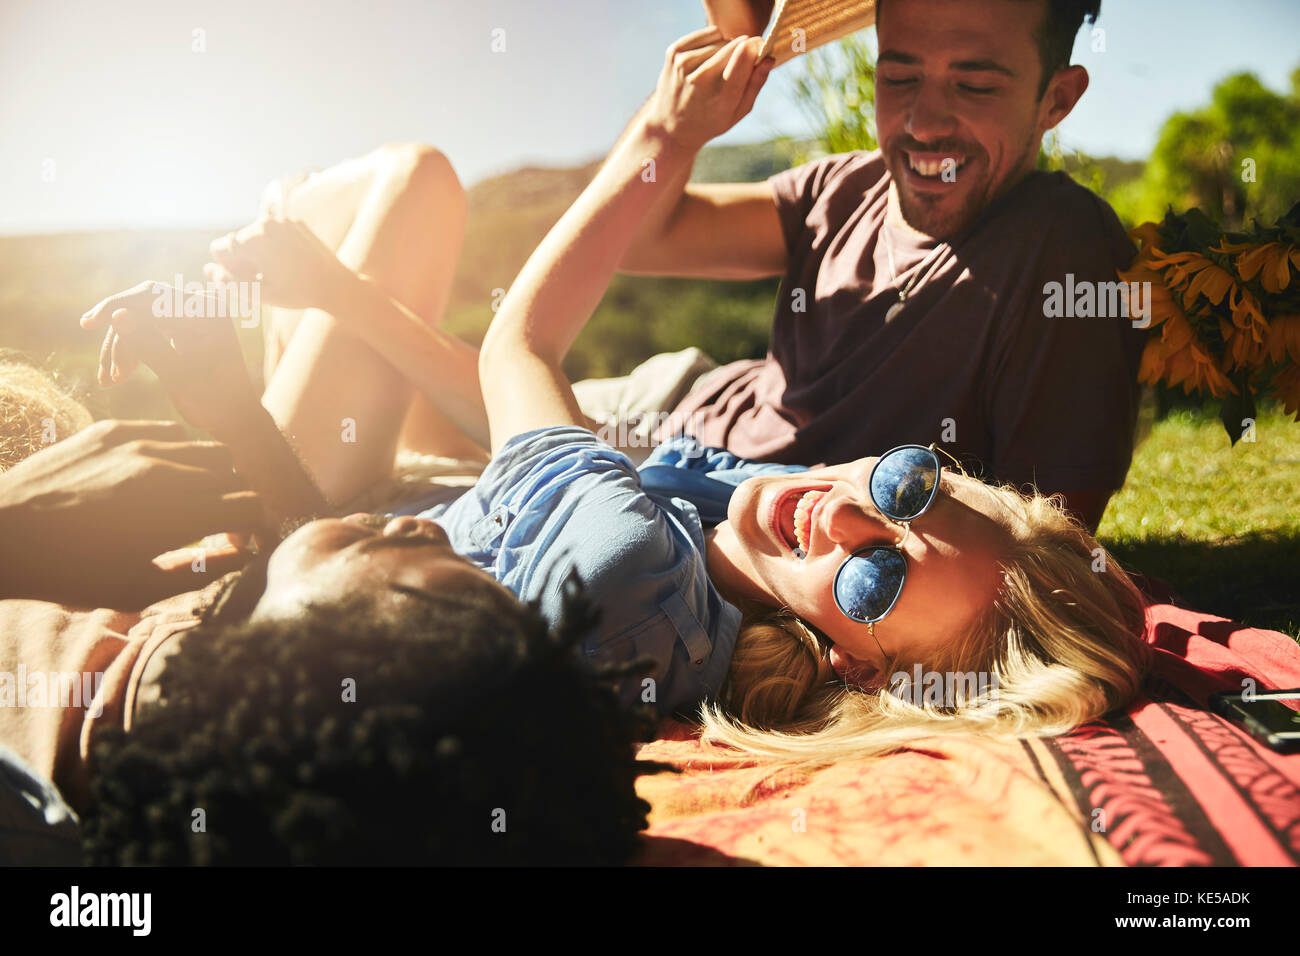 De jeunes amis ludiques rient, se détendent sur une couverture de pique-nique dans un parc ensoleillé d'été Banque D'Images